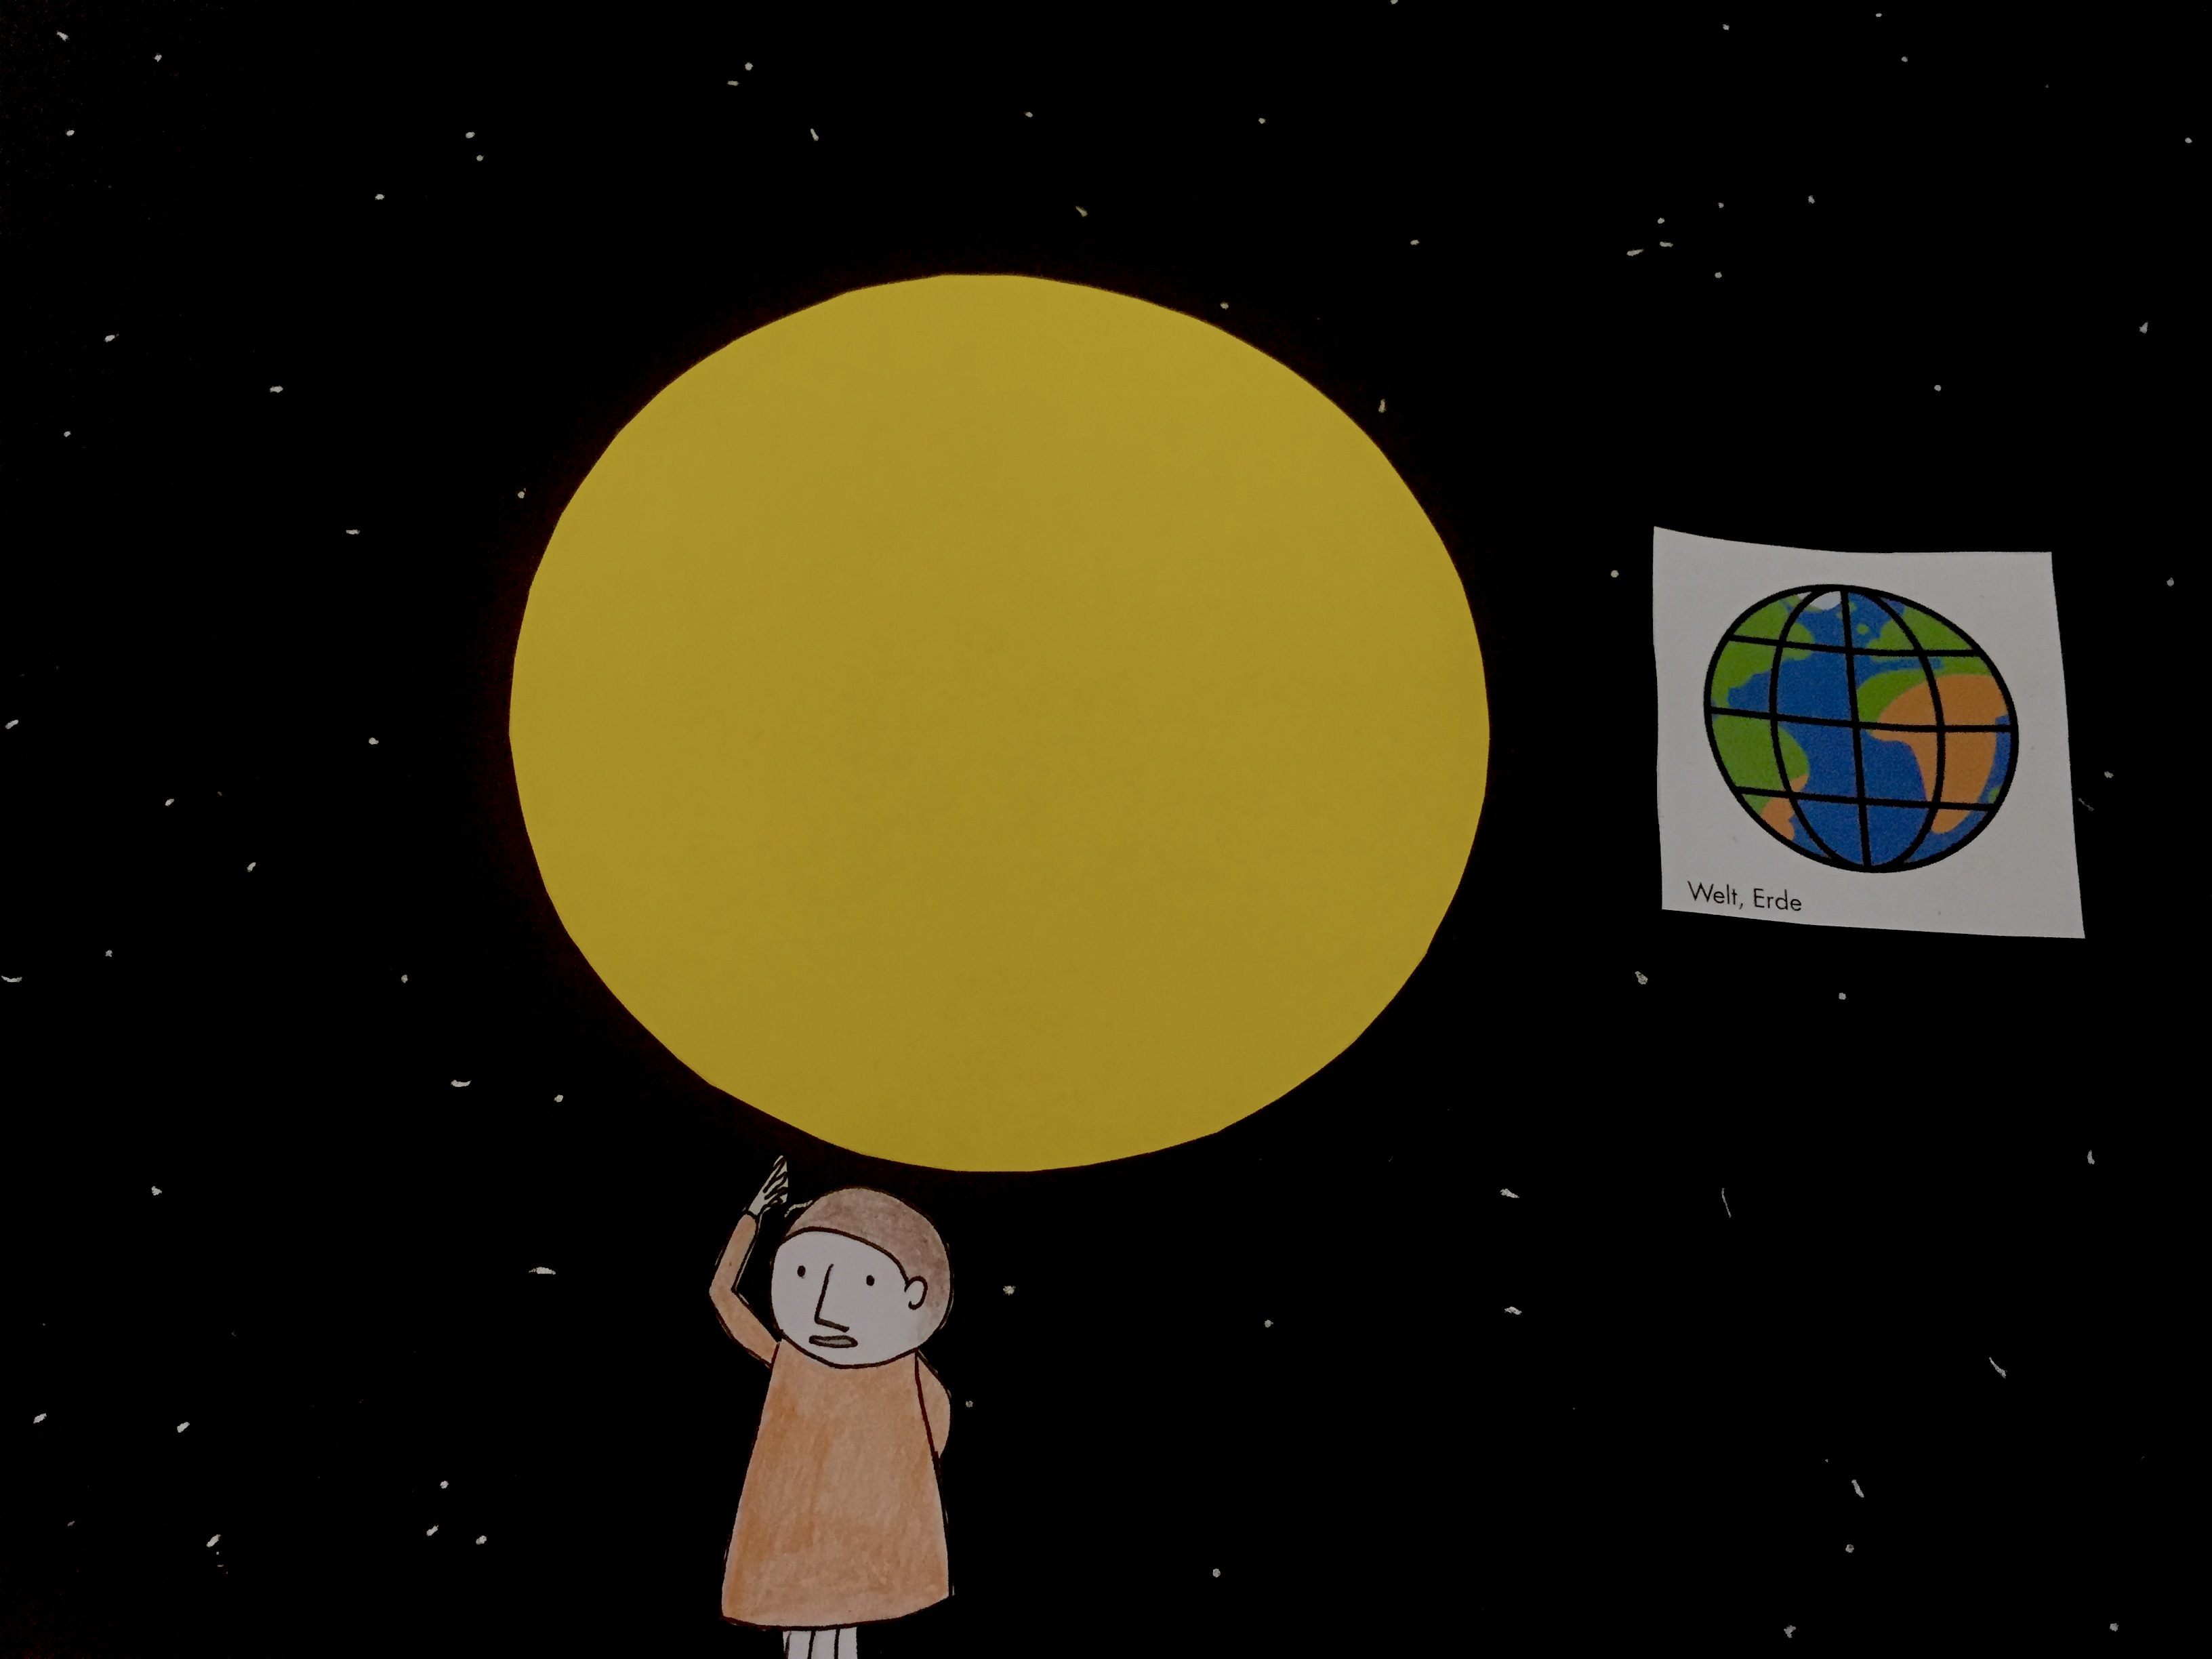 Illustration der Erde, die die Sonne umkreist. Unten ist eine Figur zu sehen, die das Wort "Sonne" gebärdet.